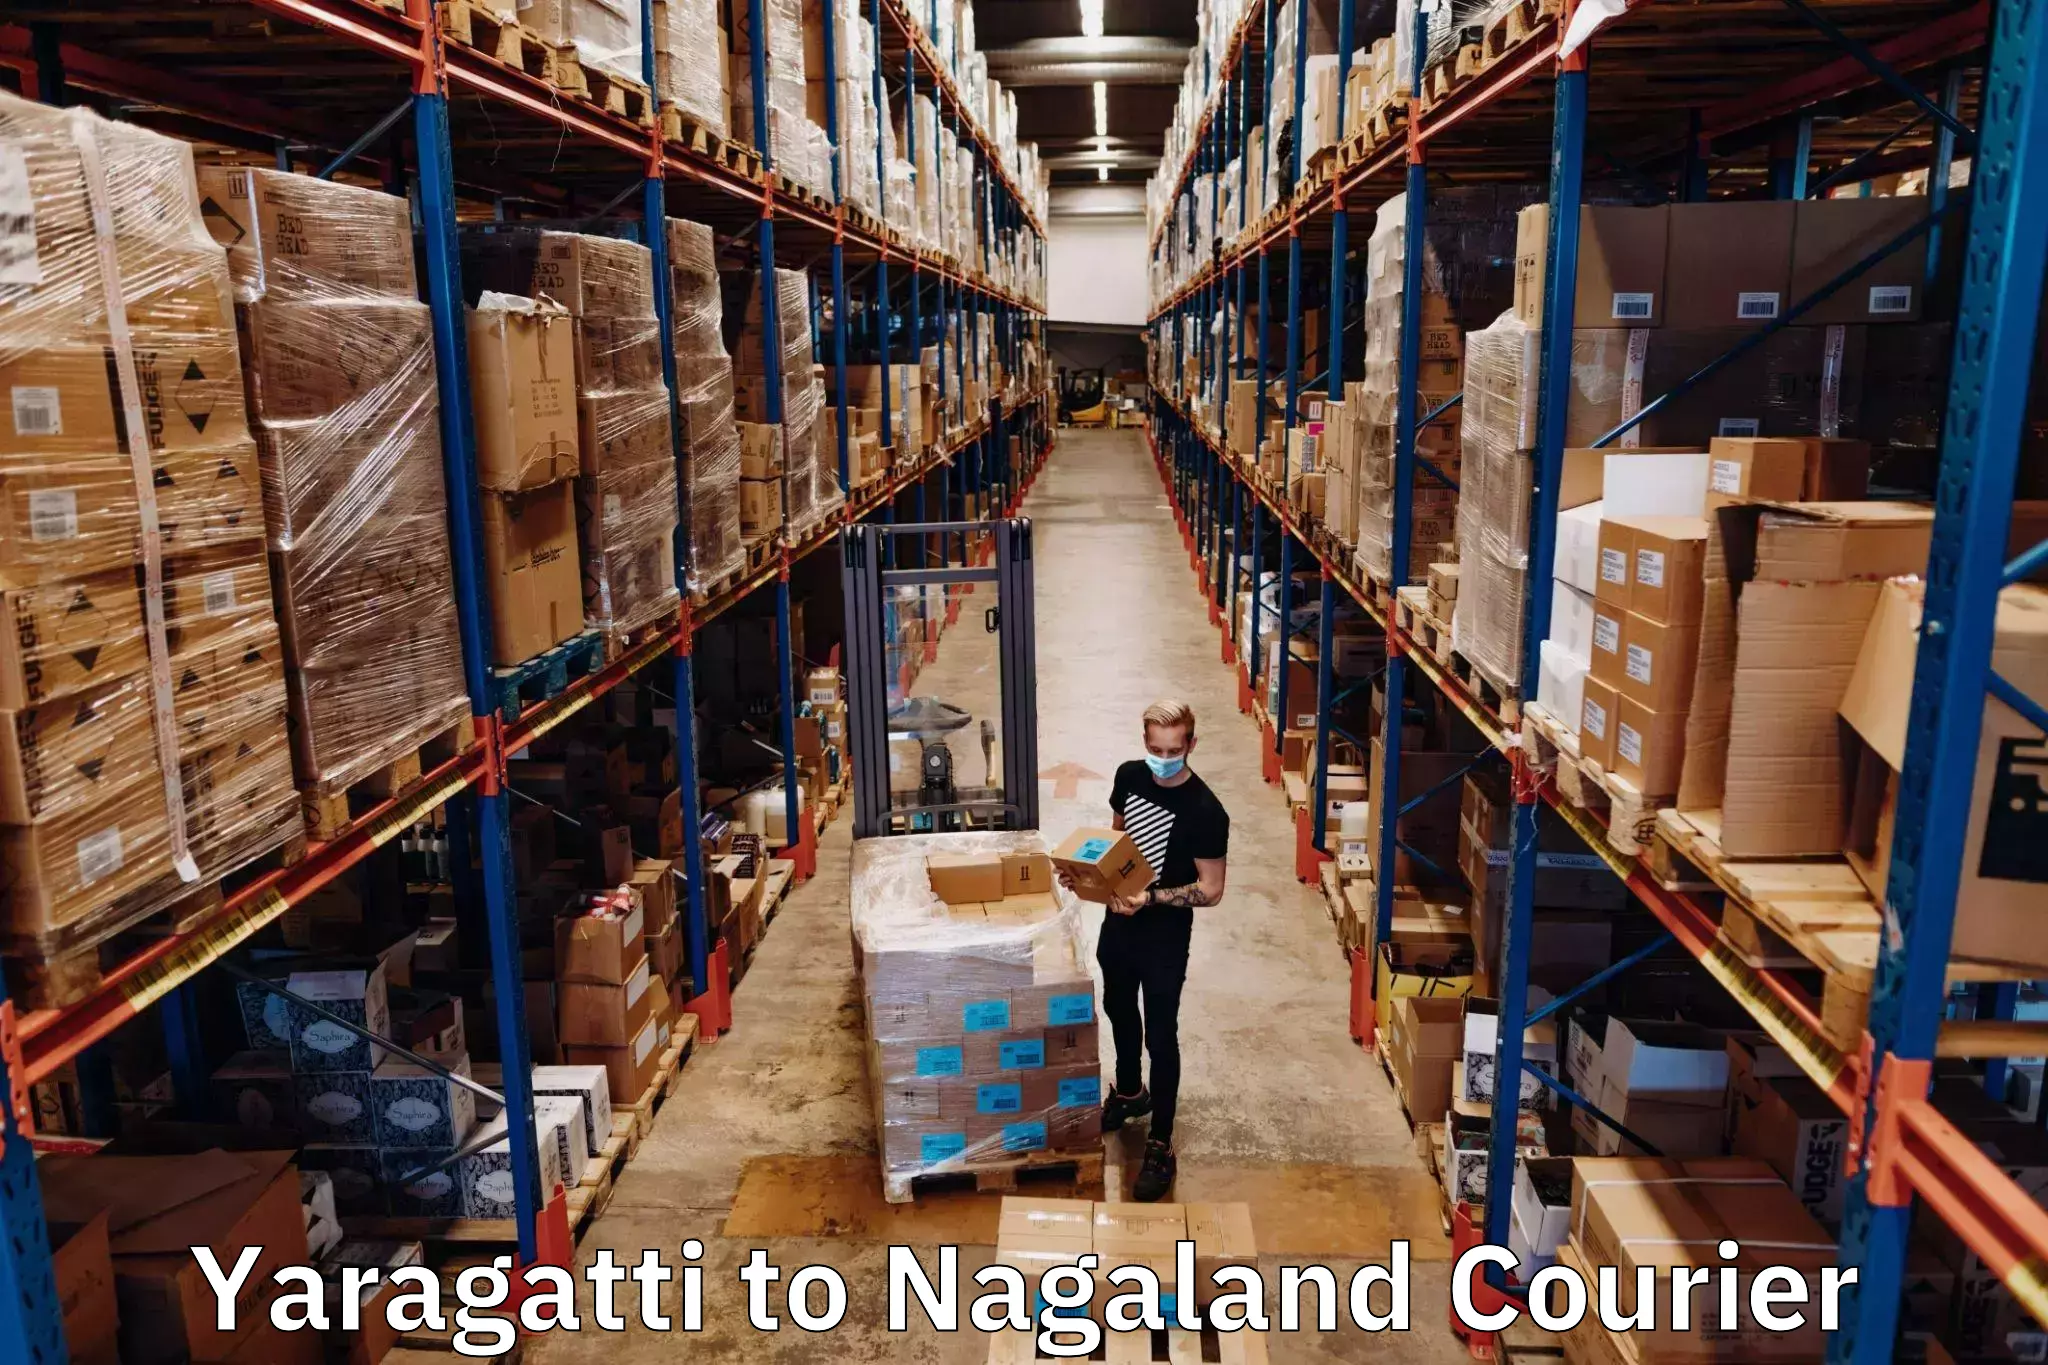 Digital shipping tools Yaragatti to Nagaland